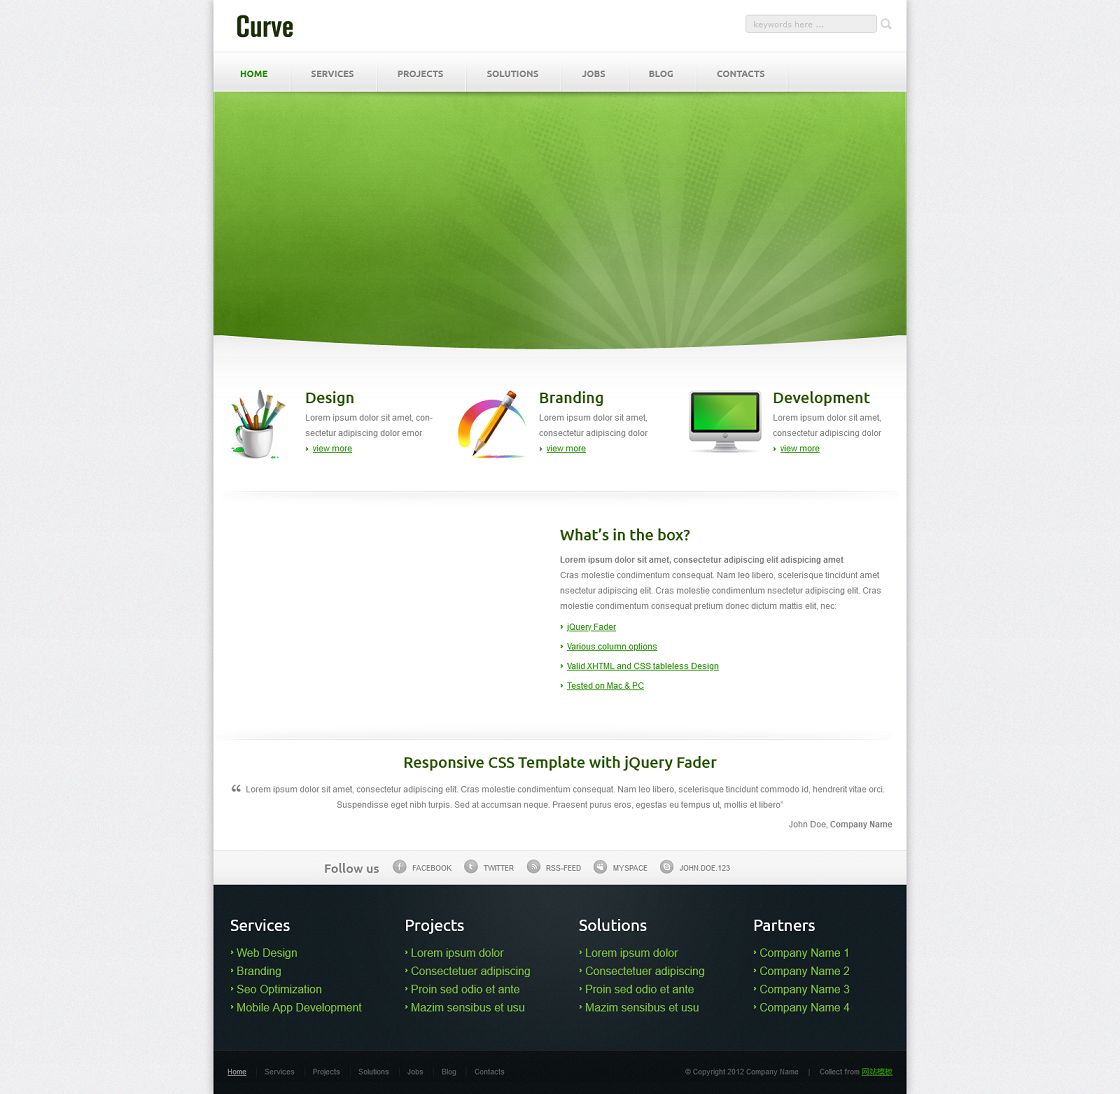 绿色大图漂亮的工业设计企业网站模板